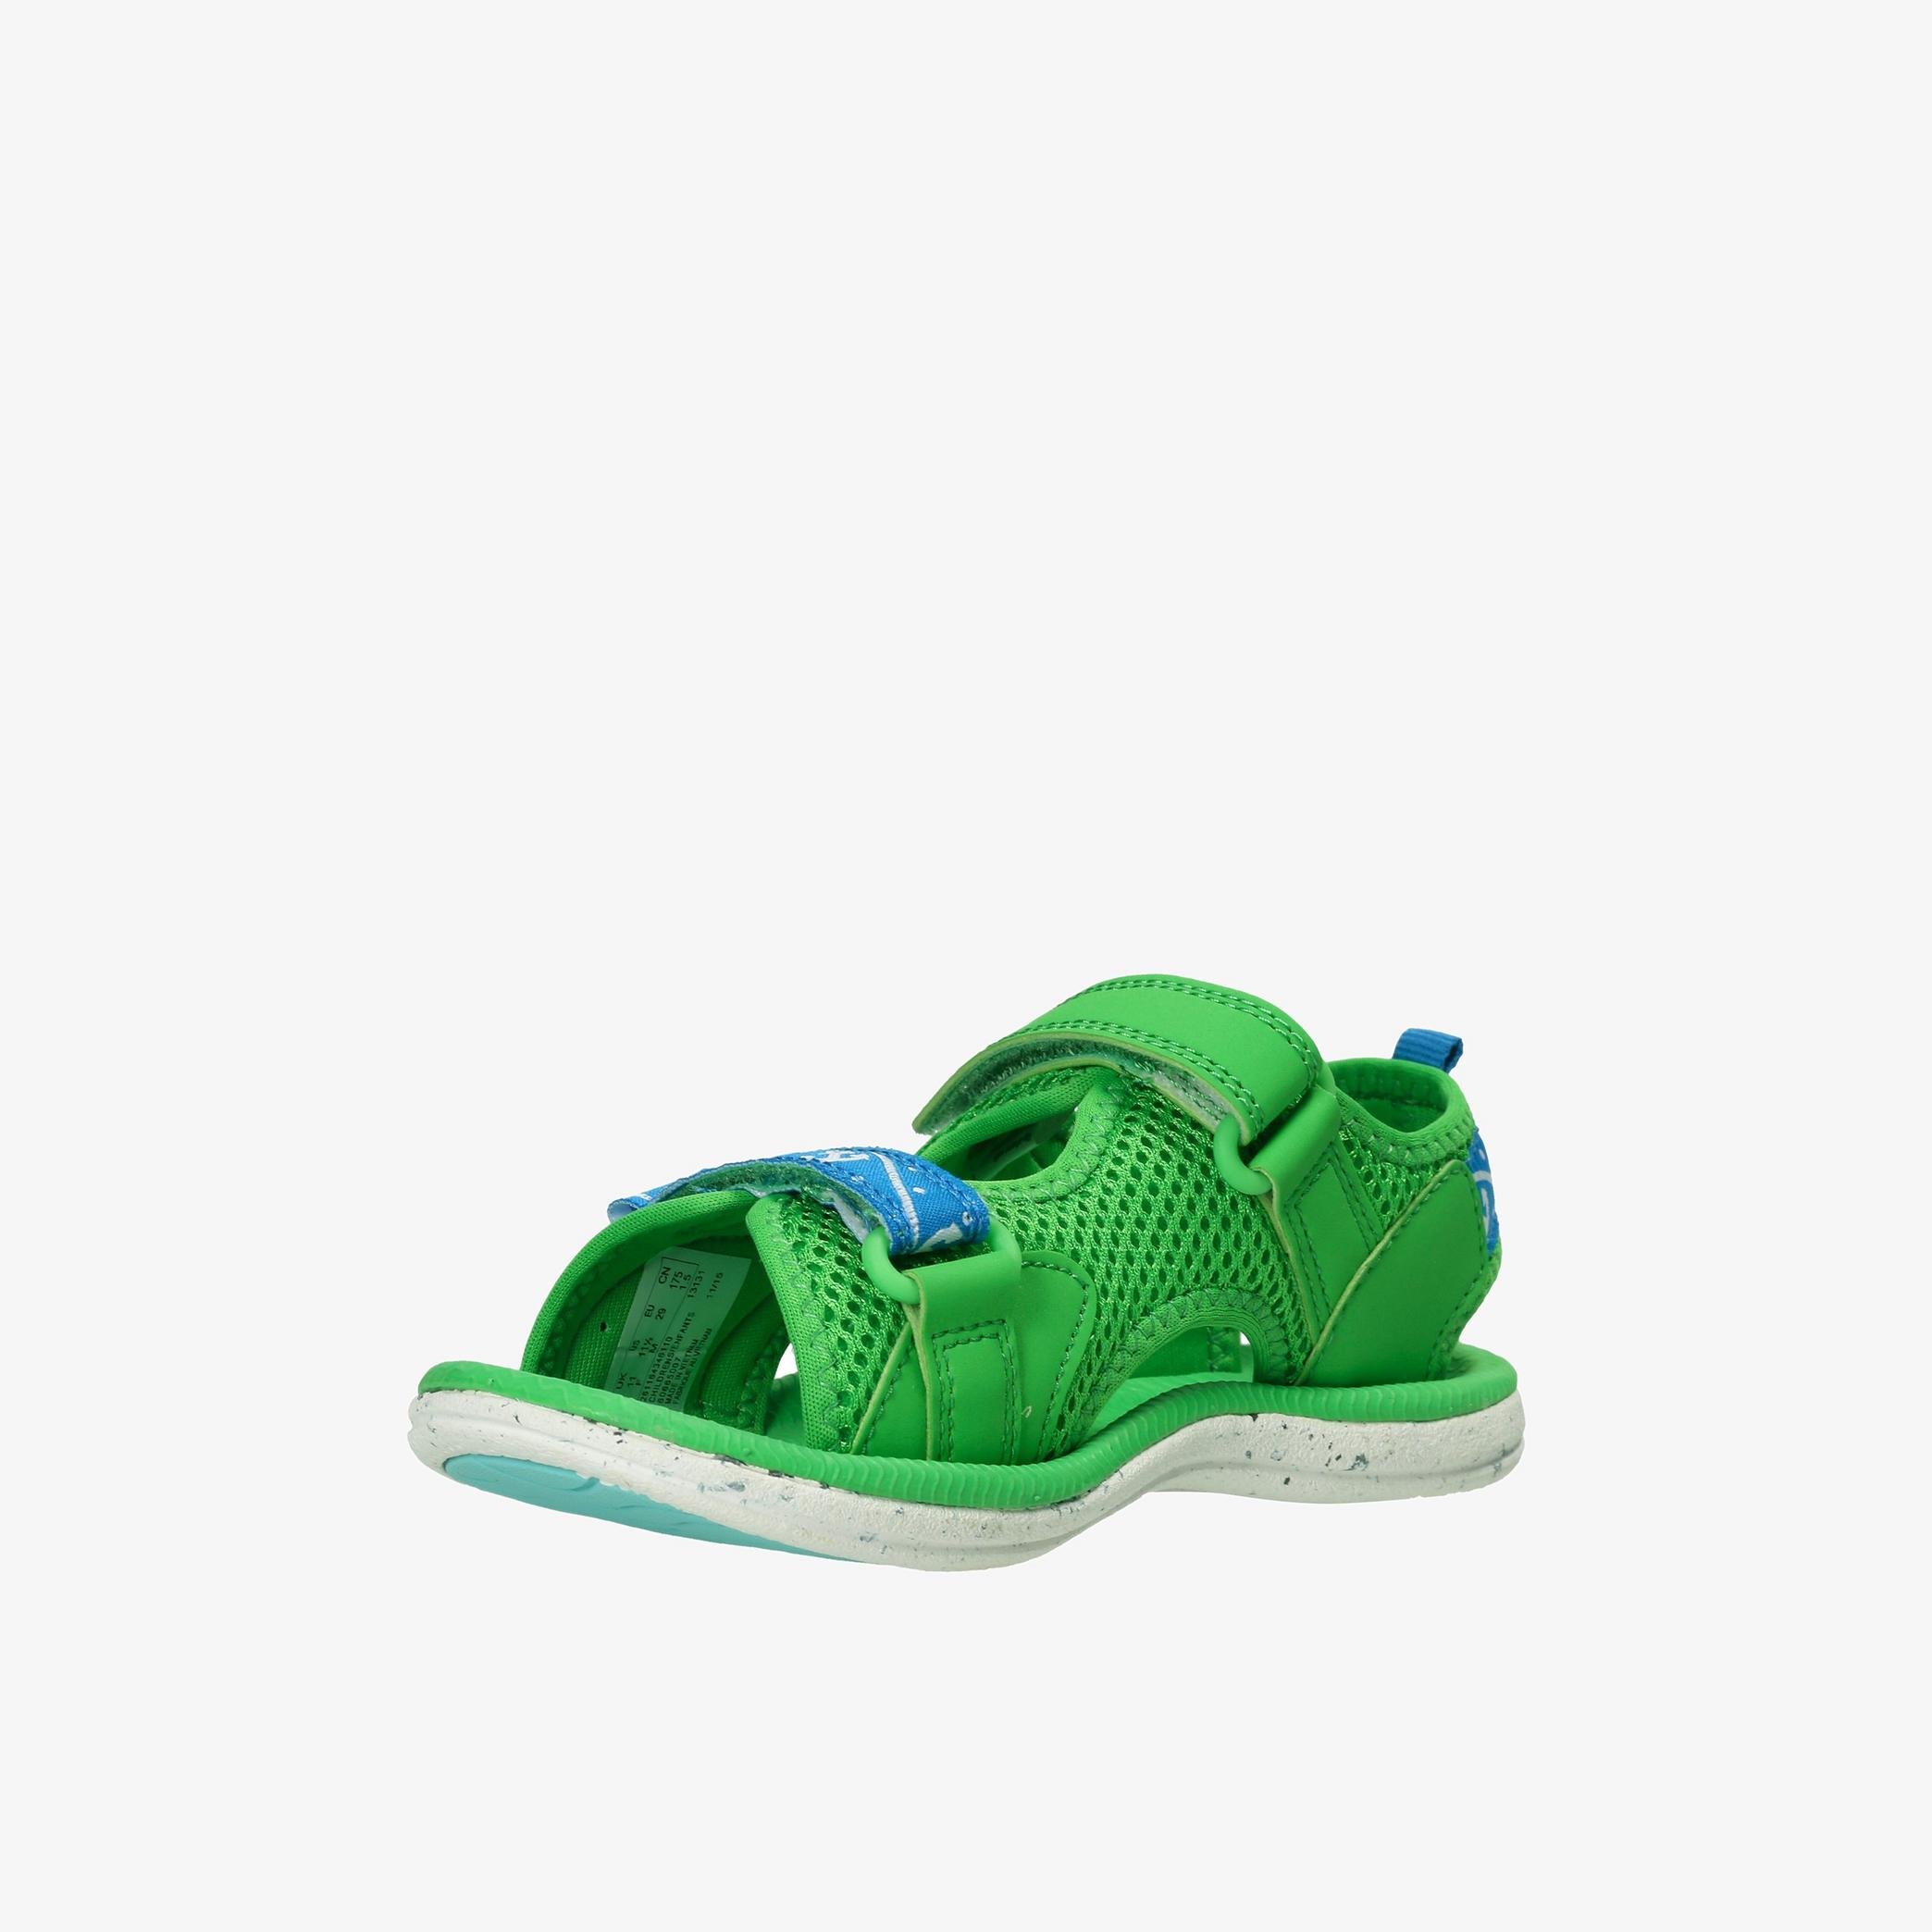 Boys Piranha Boy First Green Flat Sandals | Clarks Outlet